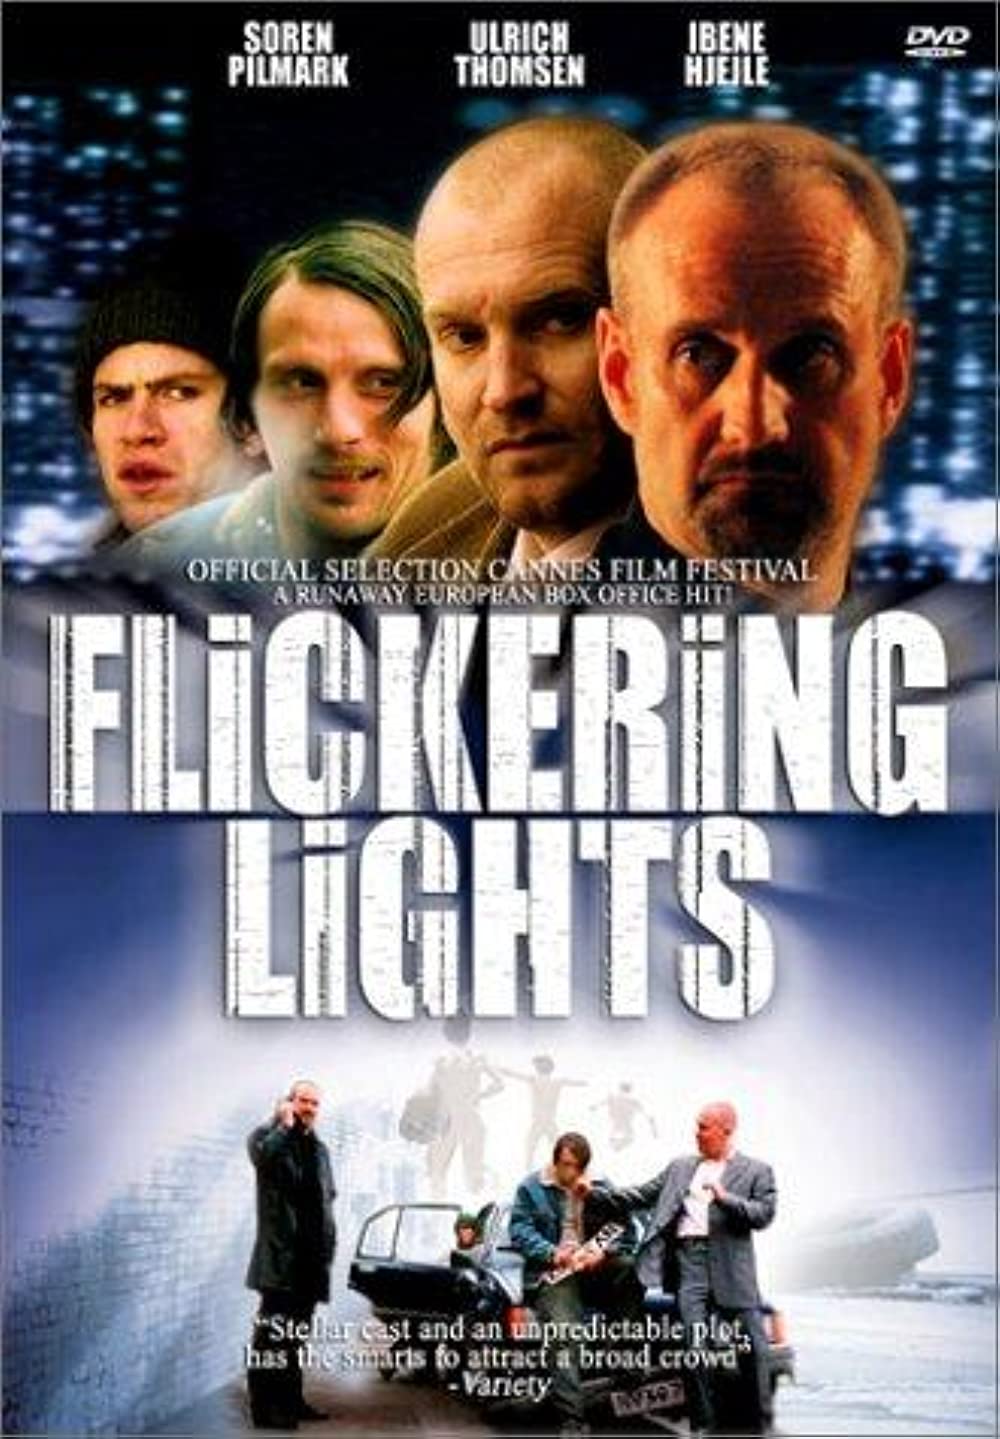 Flickering Lights (OV)